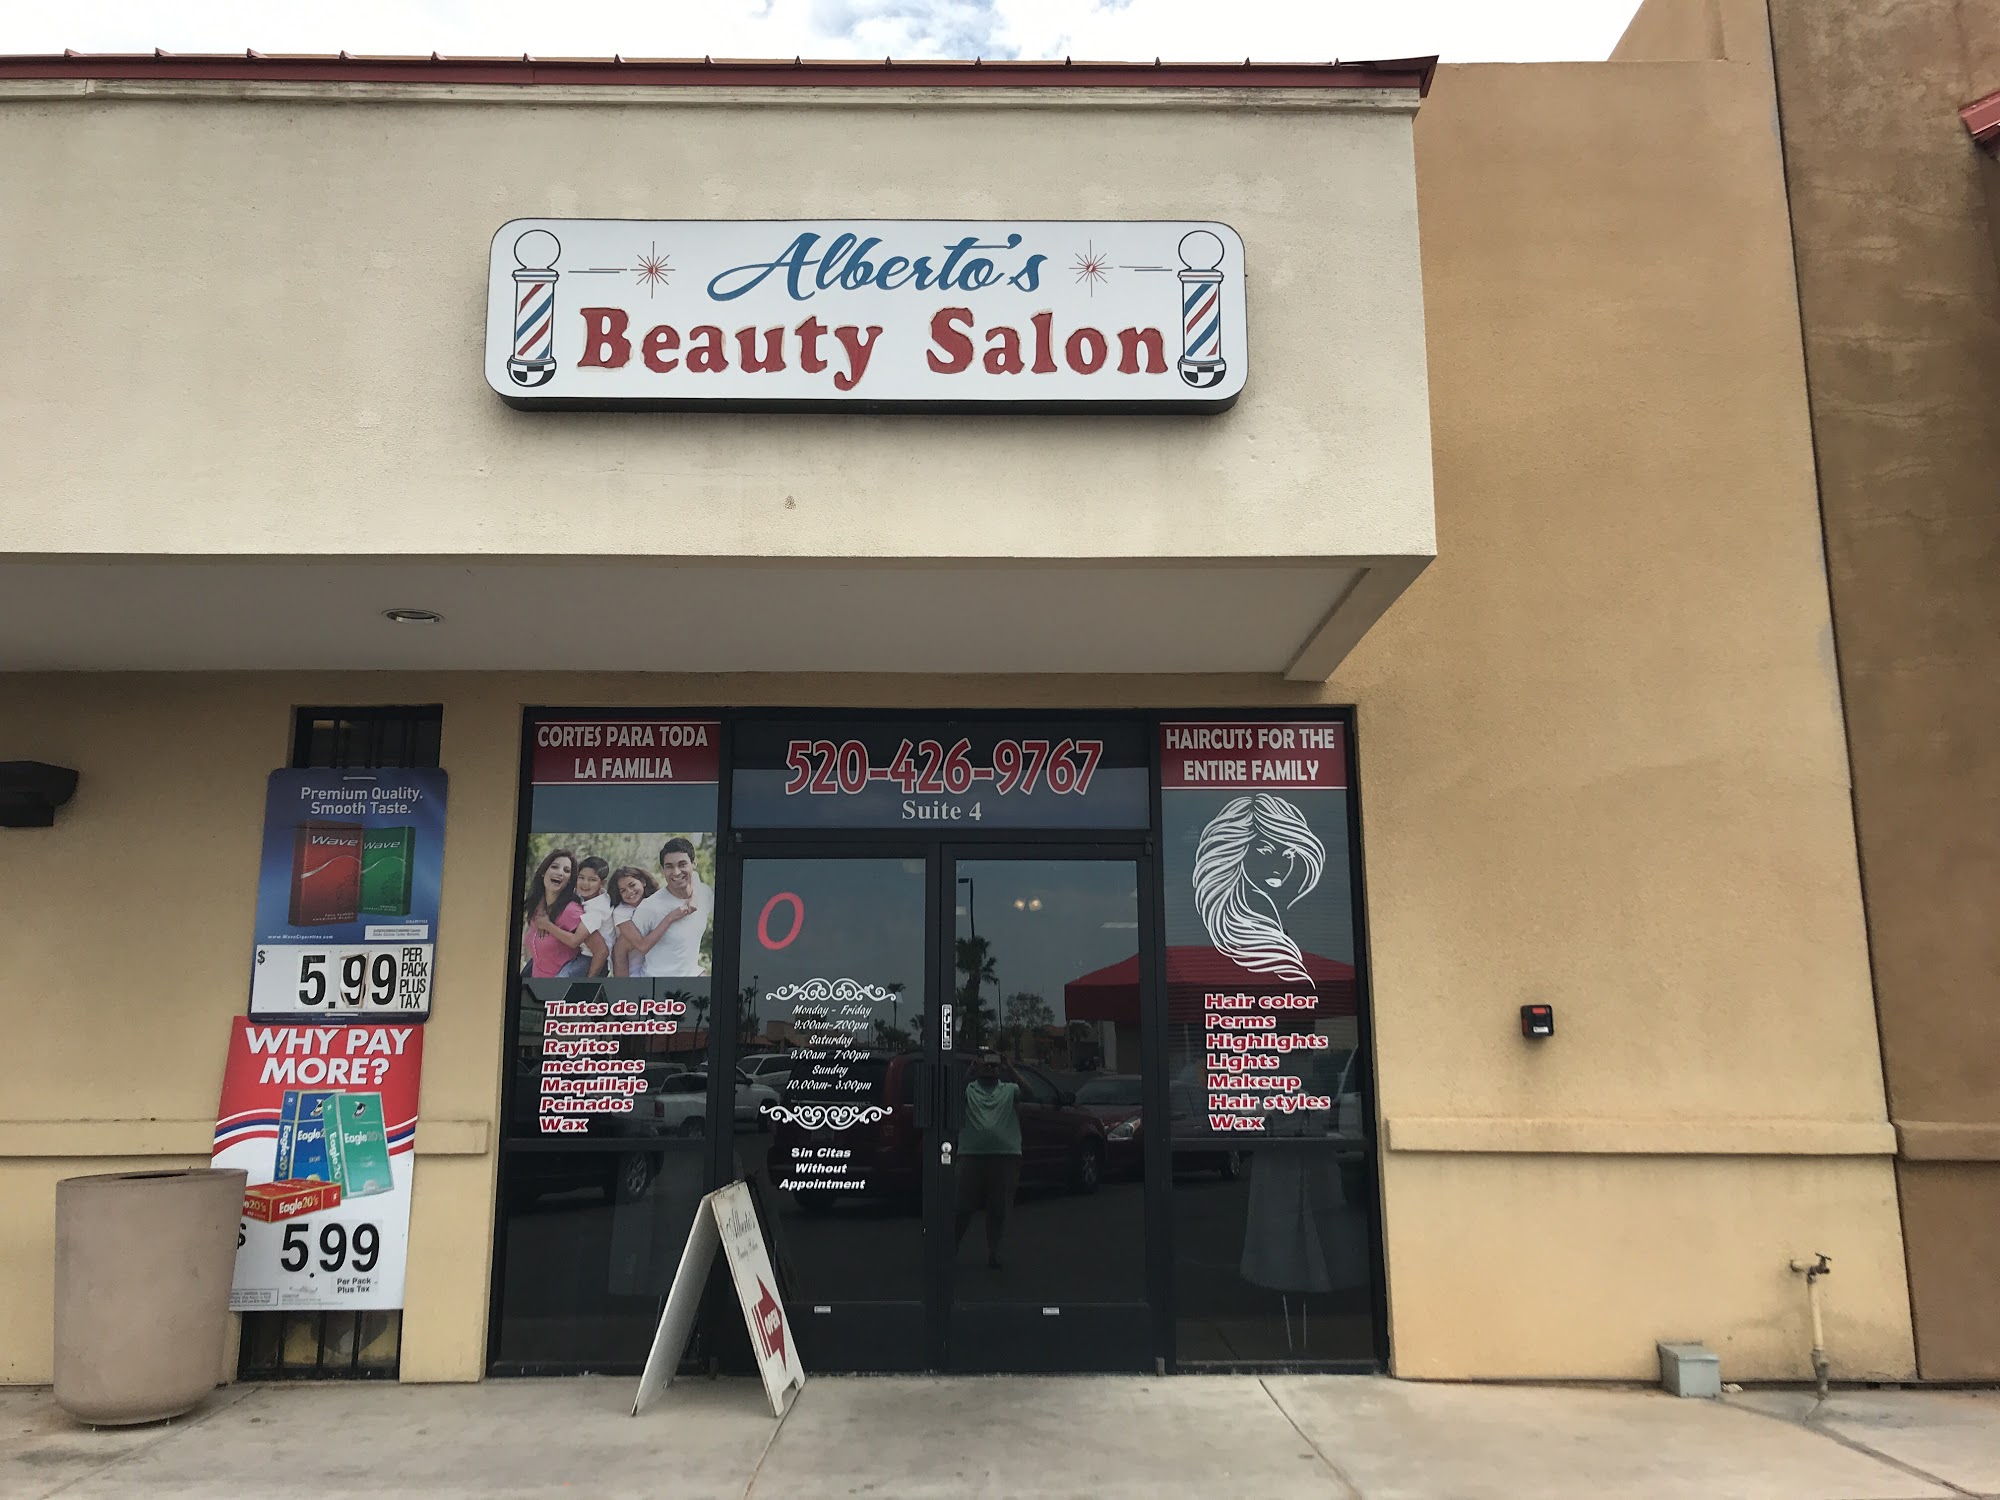 Alberto's Beauty Salon